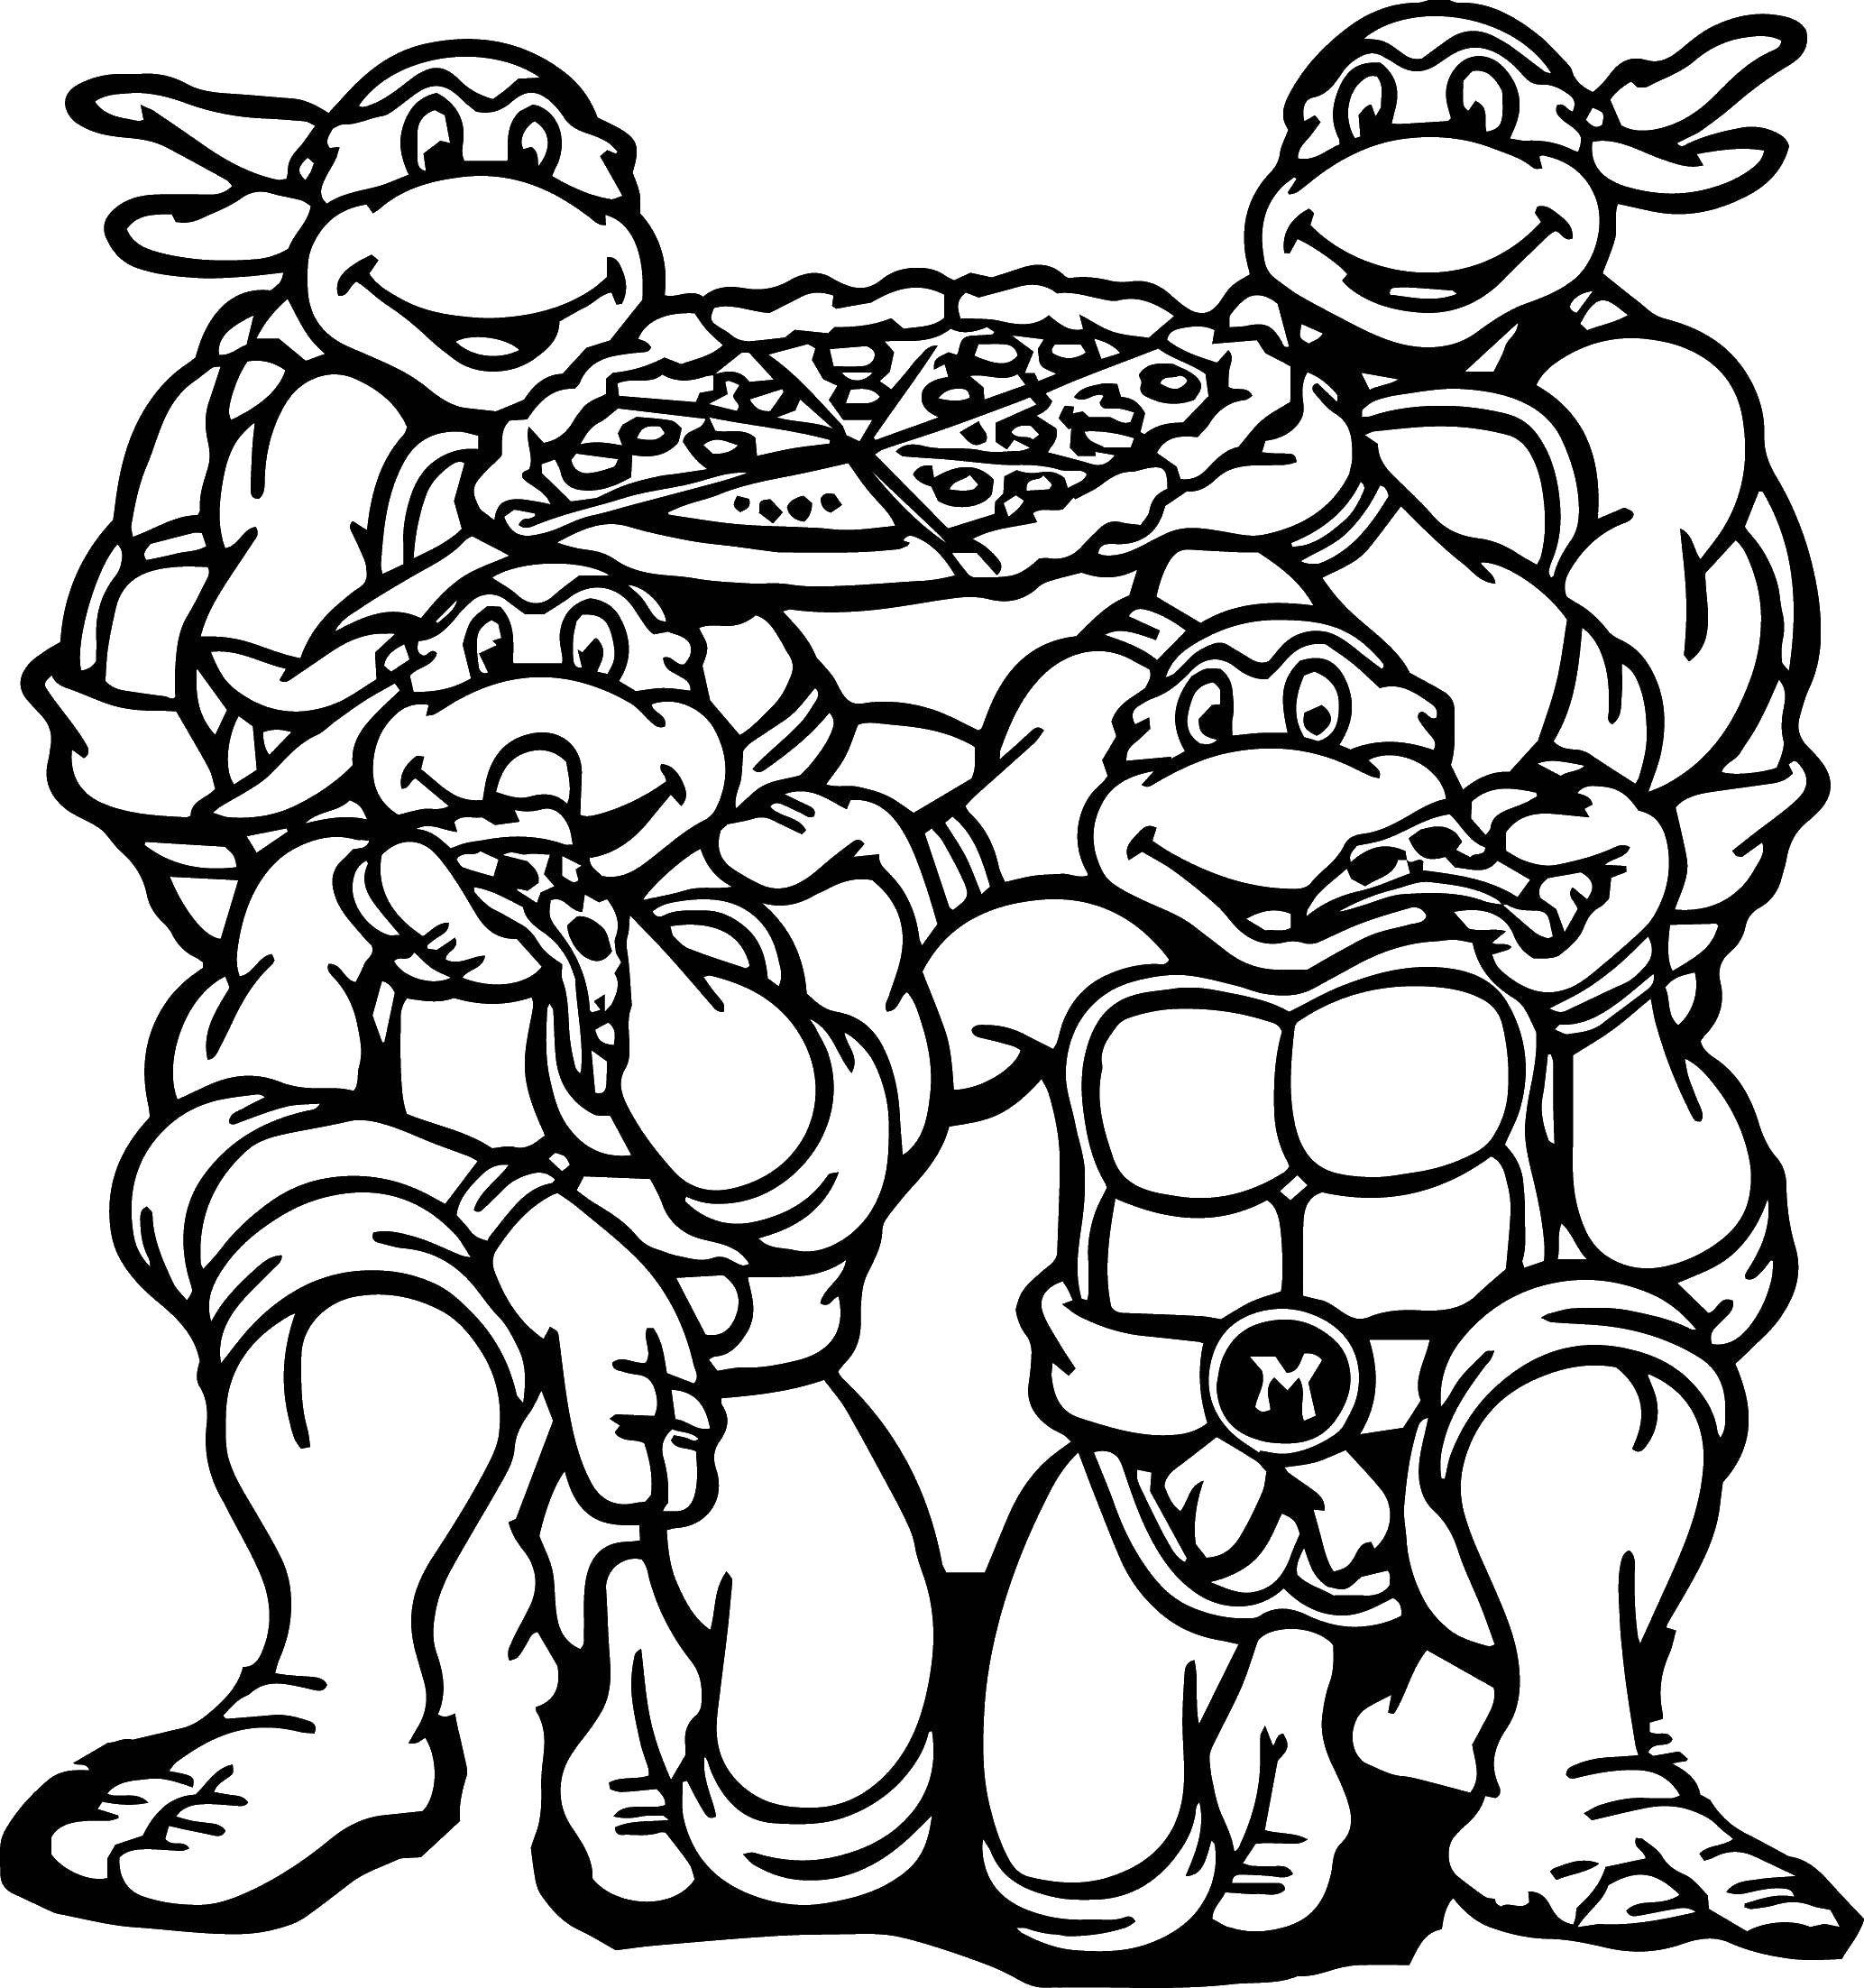 Coloring Teenage mutant ninja turtles eating pizza. Category ninja . Tags:  Comics, Teenage Mutant Ninja Turtles.